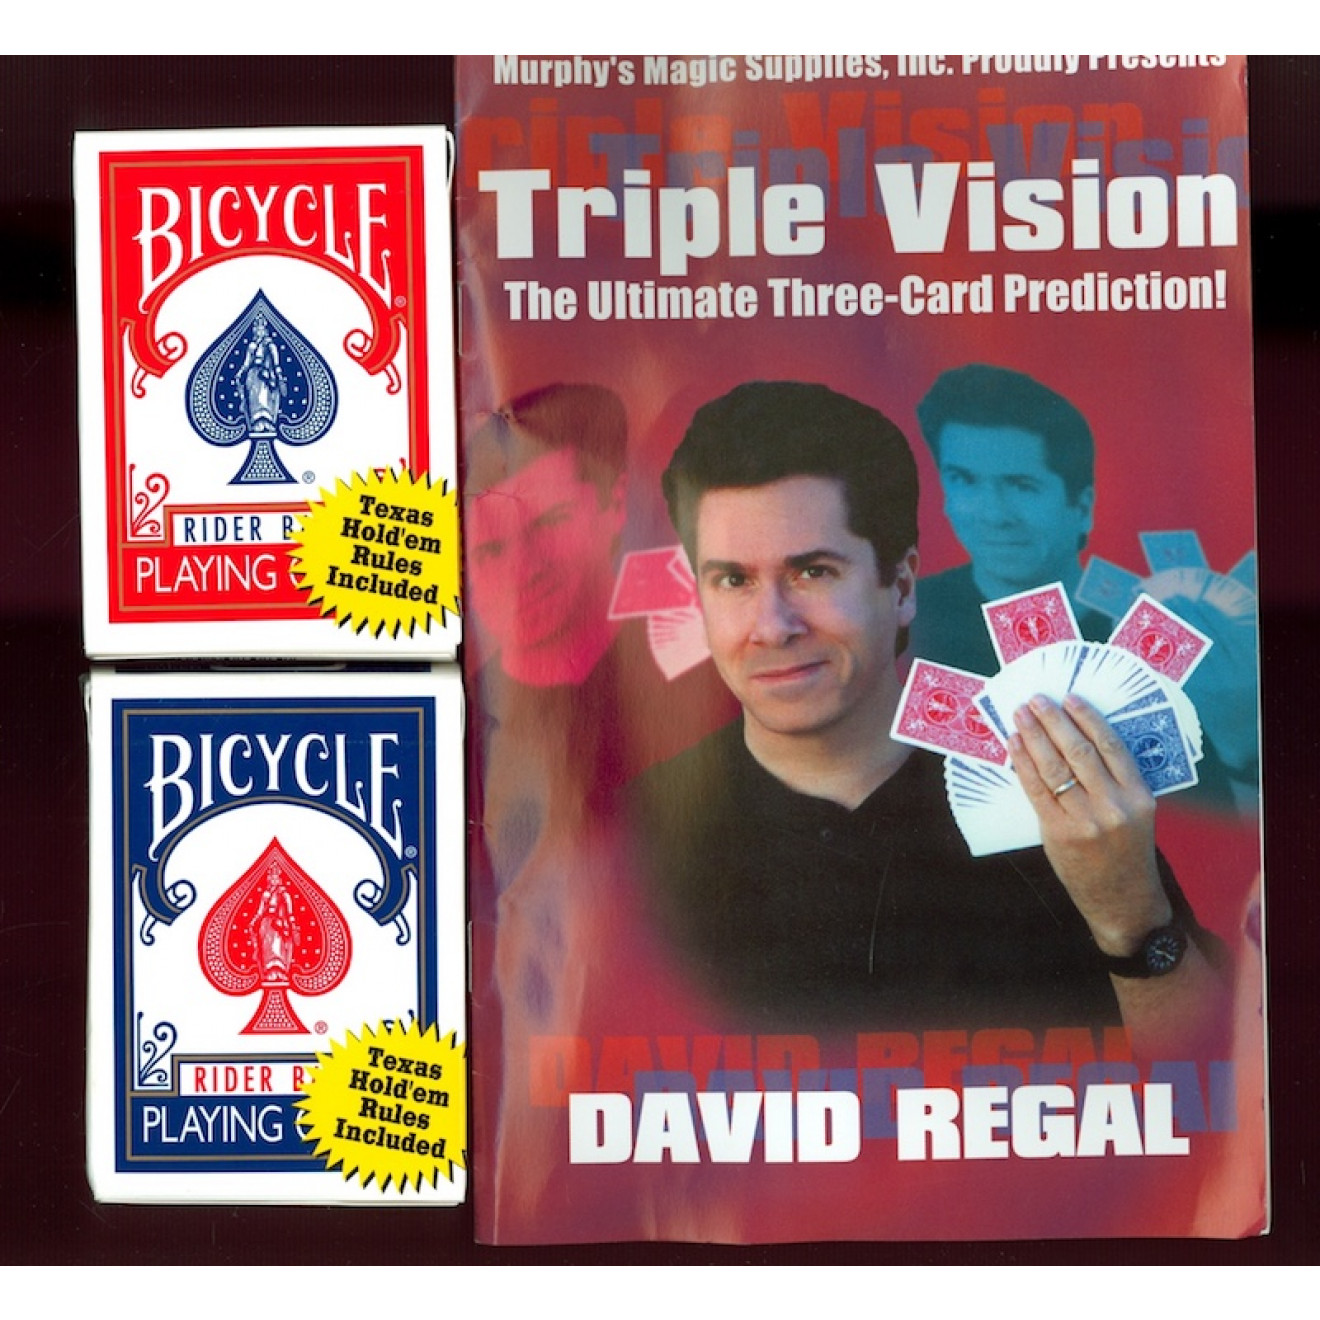 Triple Vision Trick - David Regal